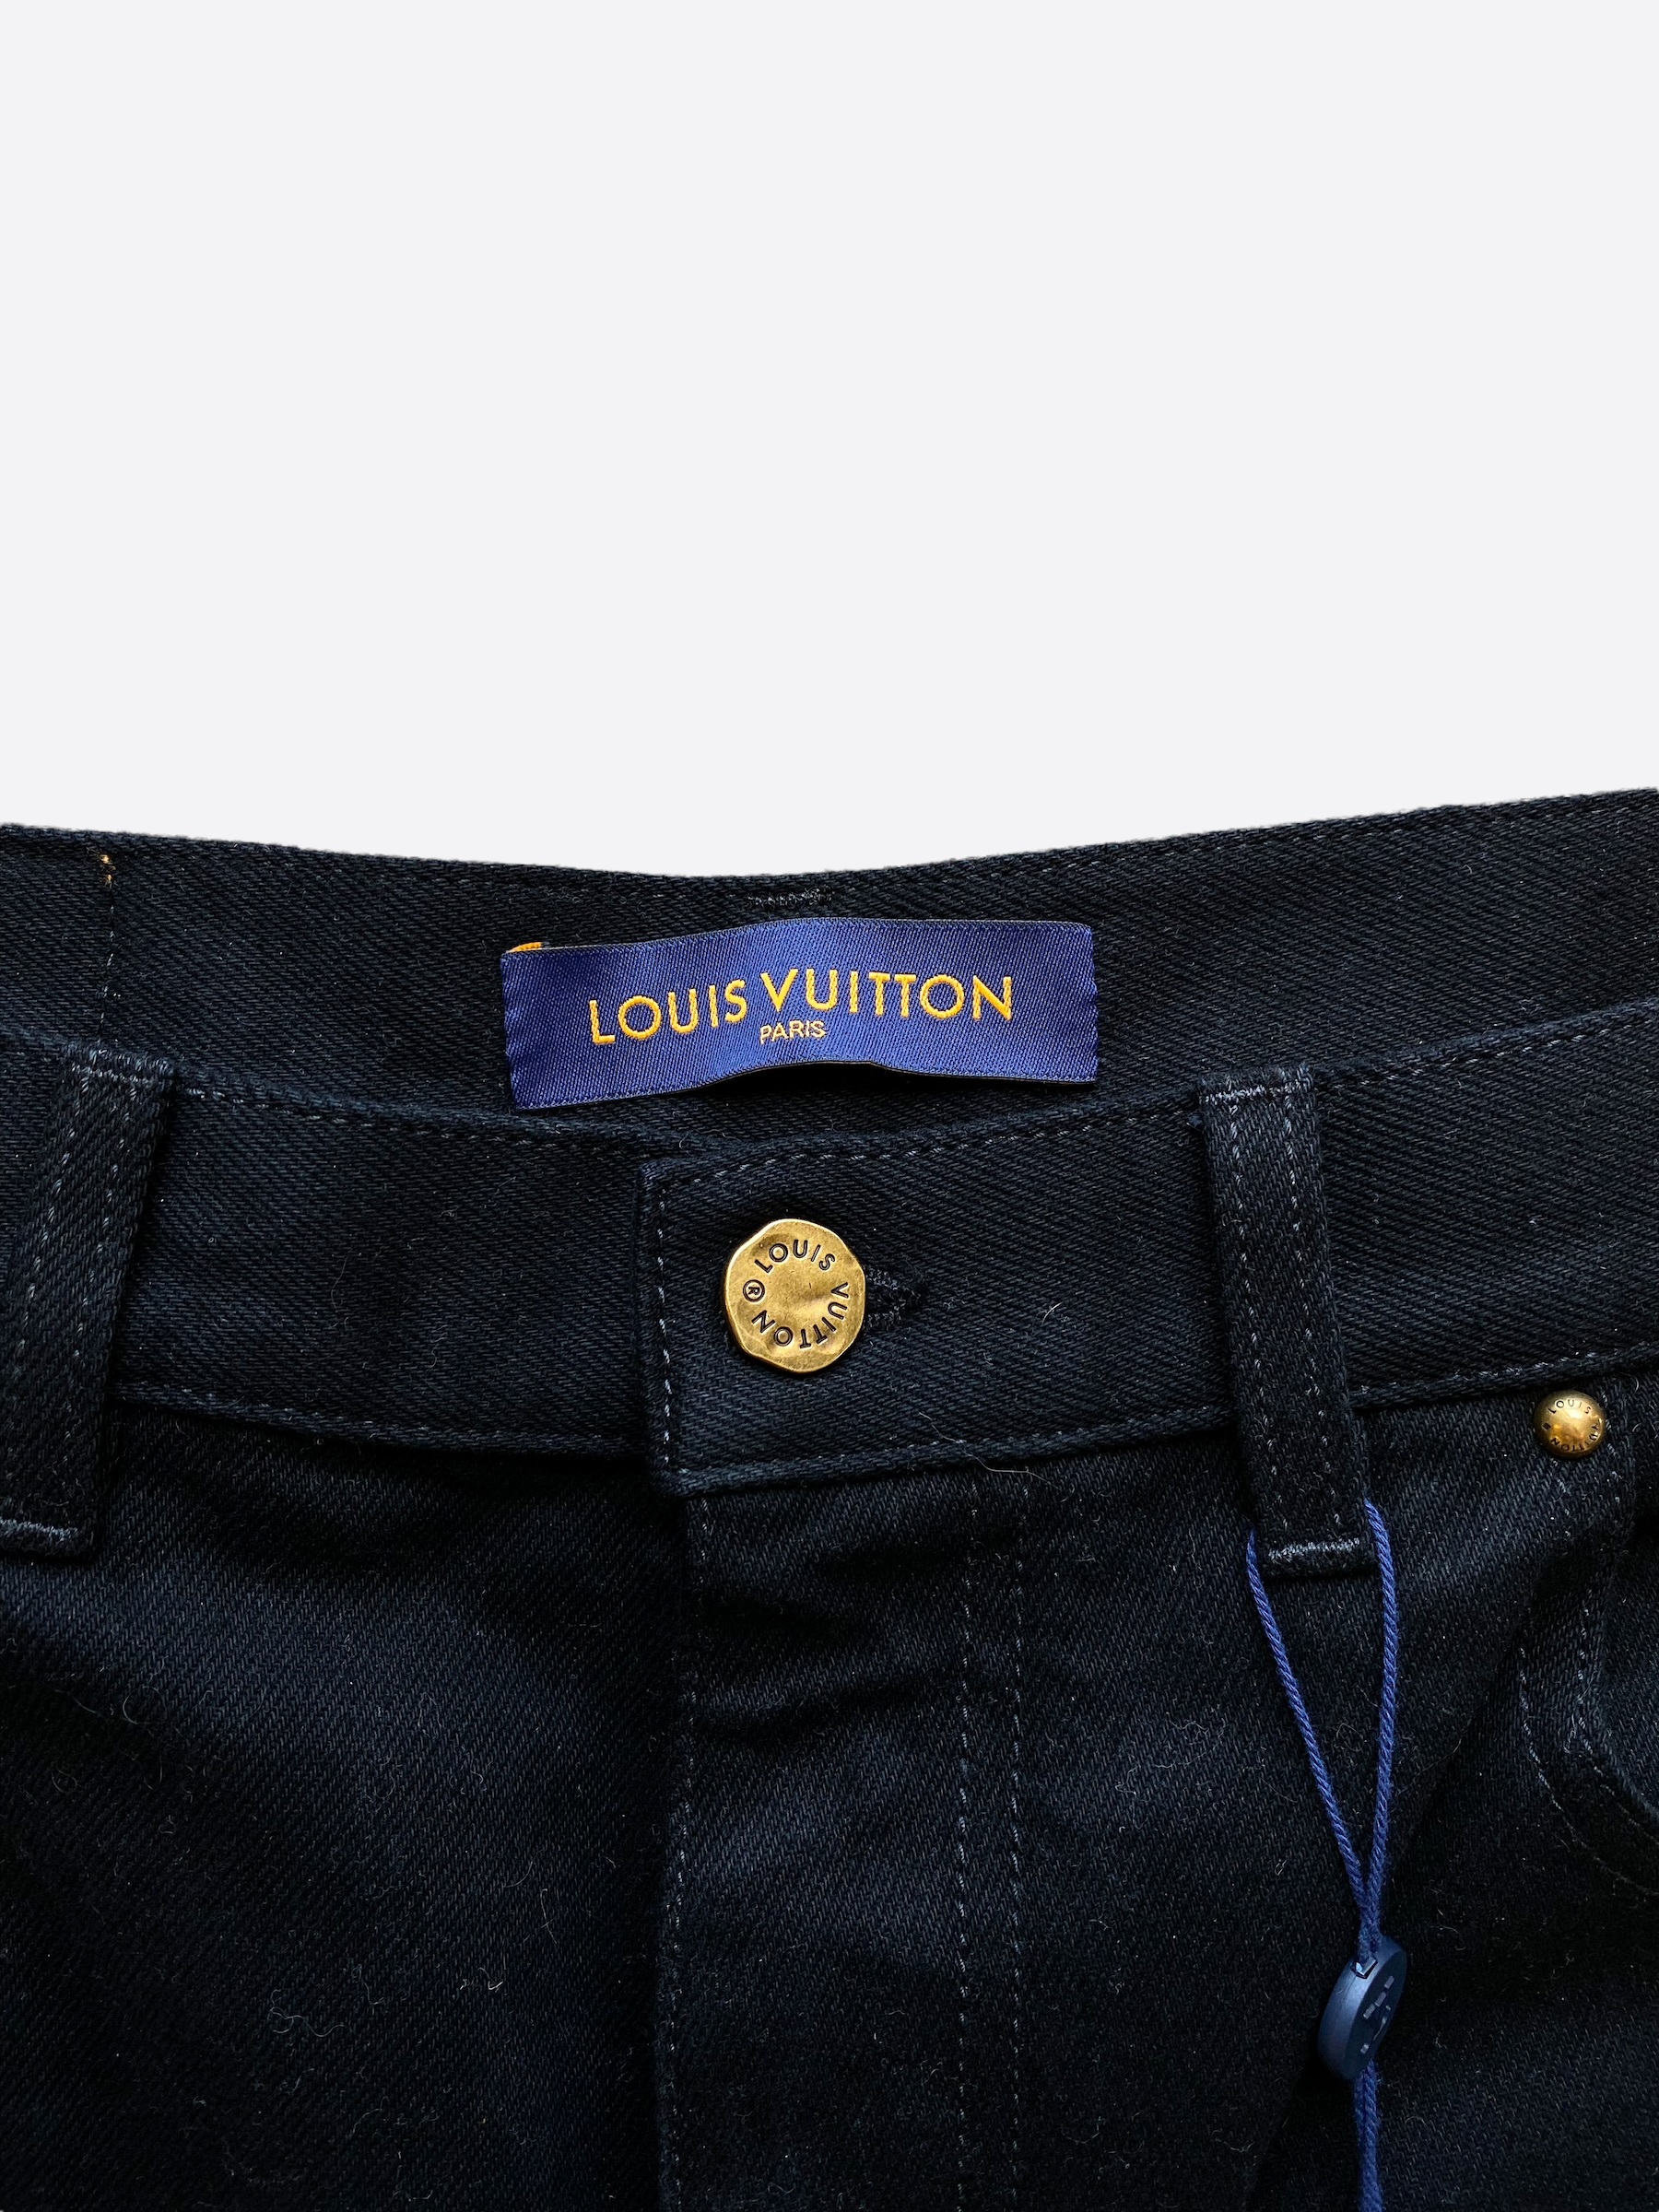 Louis Vuitton Paris jeans new with tags size waist 36